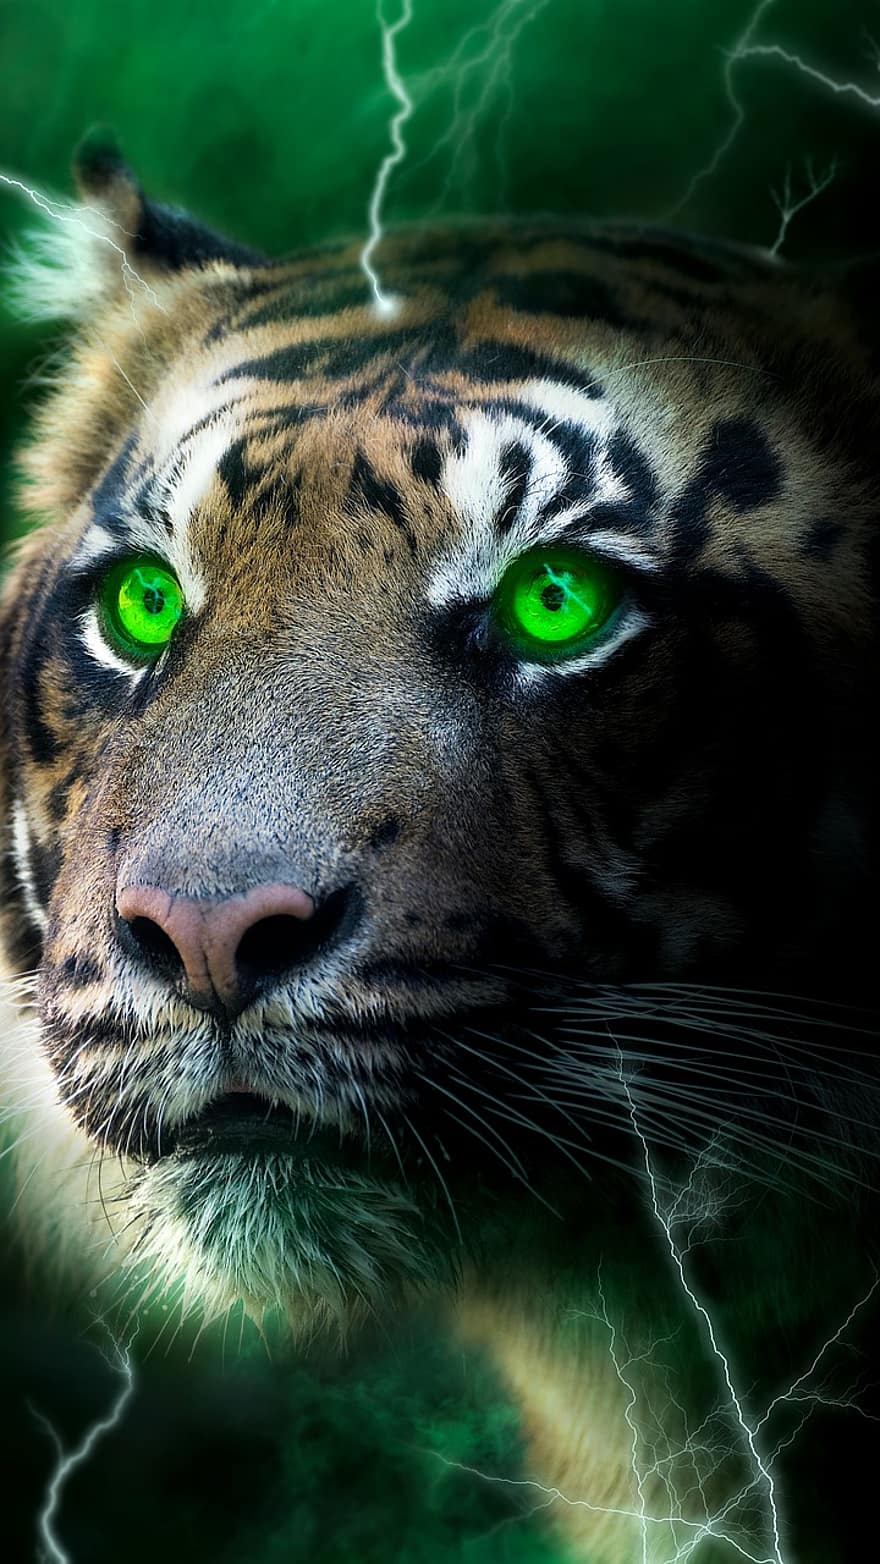 Tiger, Blitz, dunkel, glühen, Grün, Nebel, Tapete, katzenartig, Tiere in freier Wildbahn, Tierkopf, undomestizierte Katze